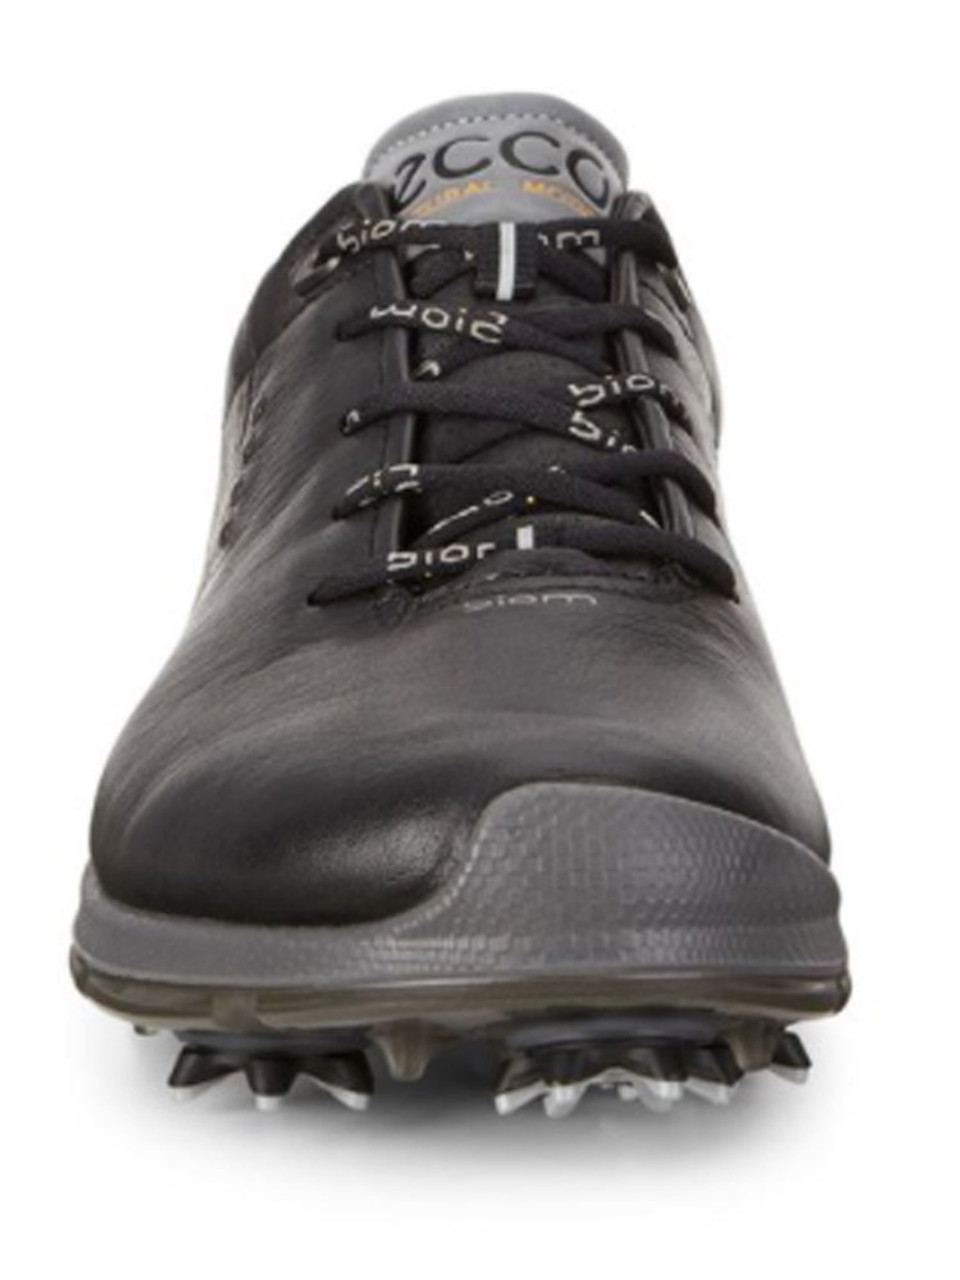 Ecco Biom G2 Golf Shoes - Black/Black 